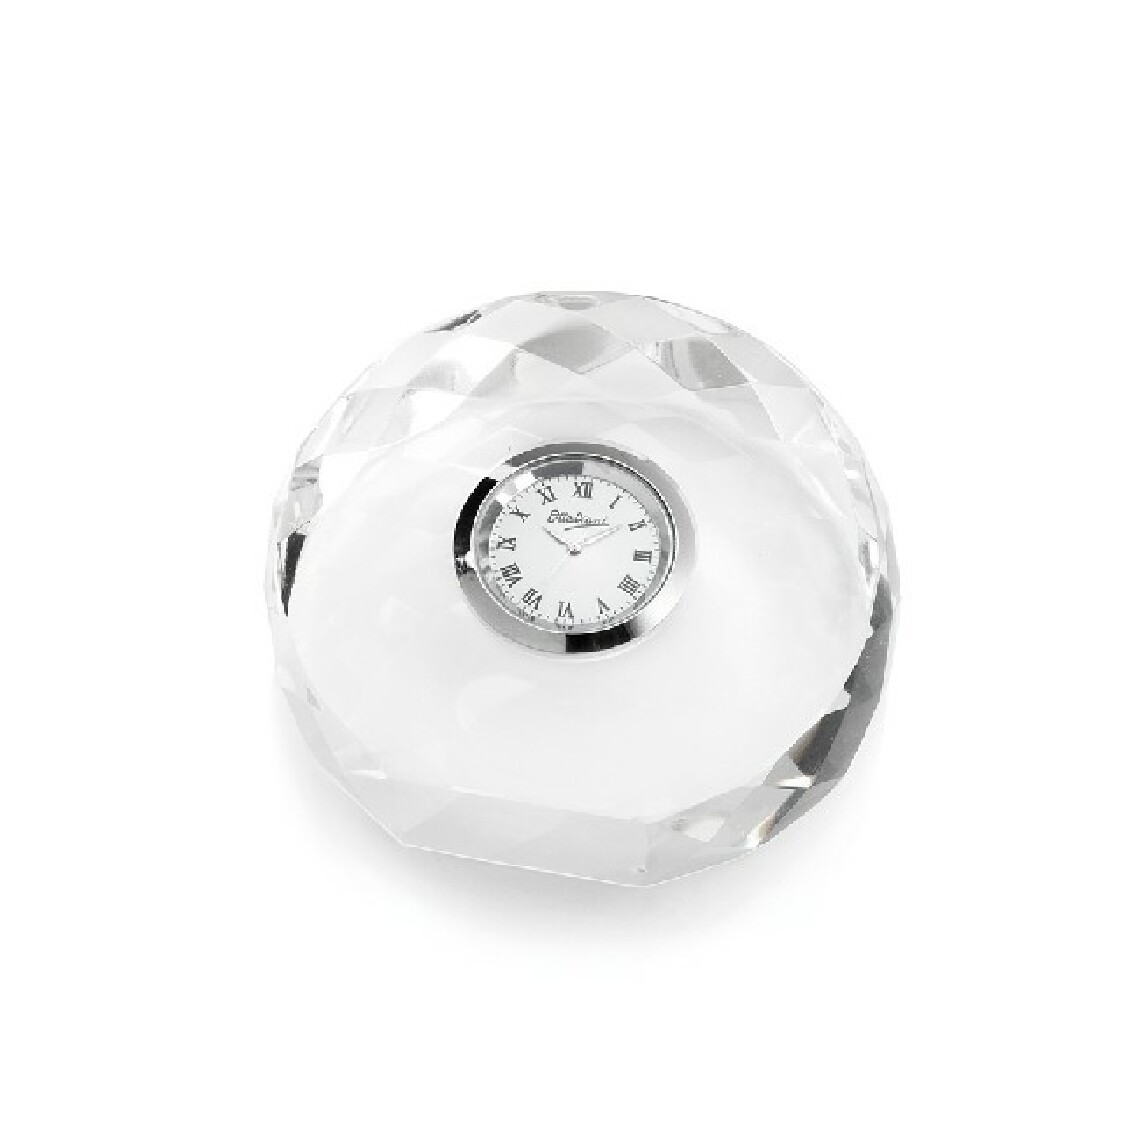 Homemania - HOMEMANIA Horloge de table Cercle - Analogique - Réveil, Décoration de table -Blanc en Crystal, 9,5 x 9 x 4 cm - Horloges, pendules